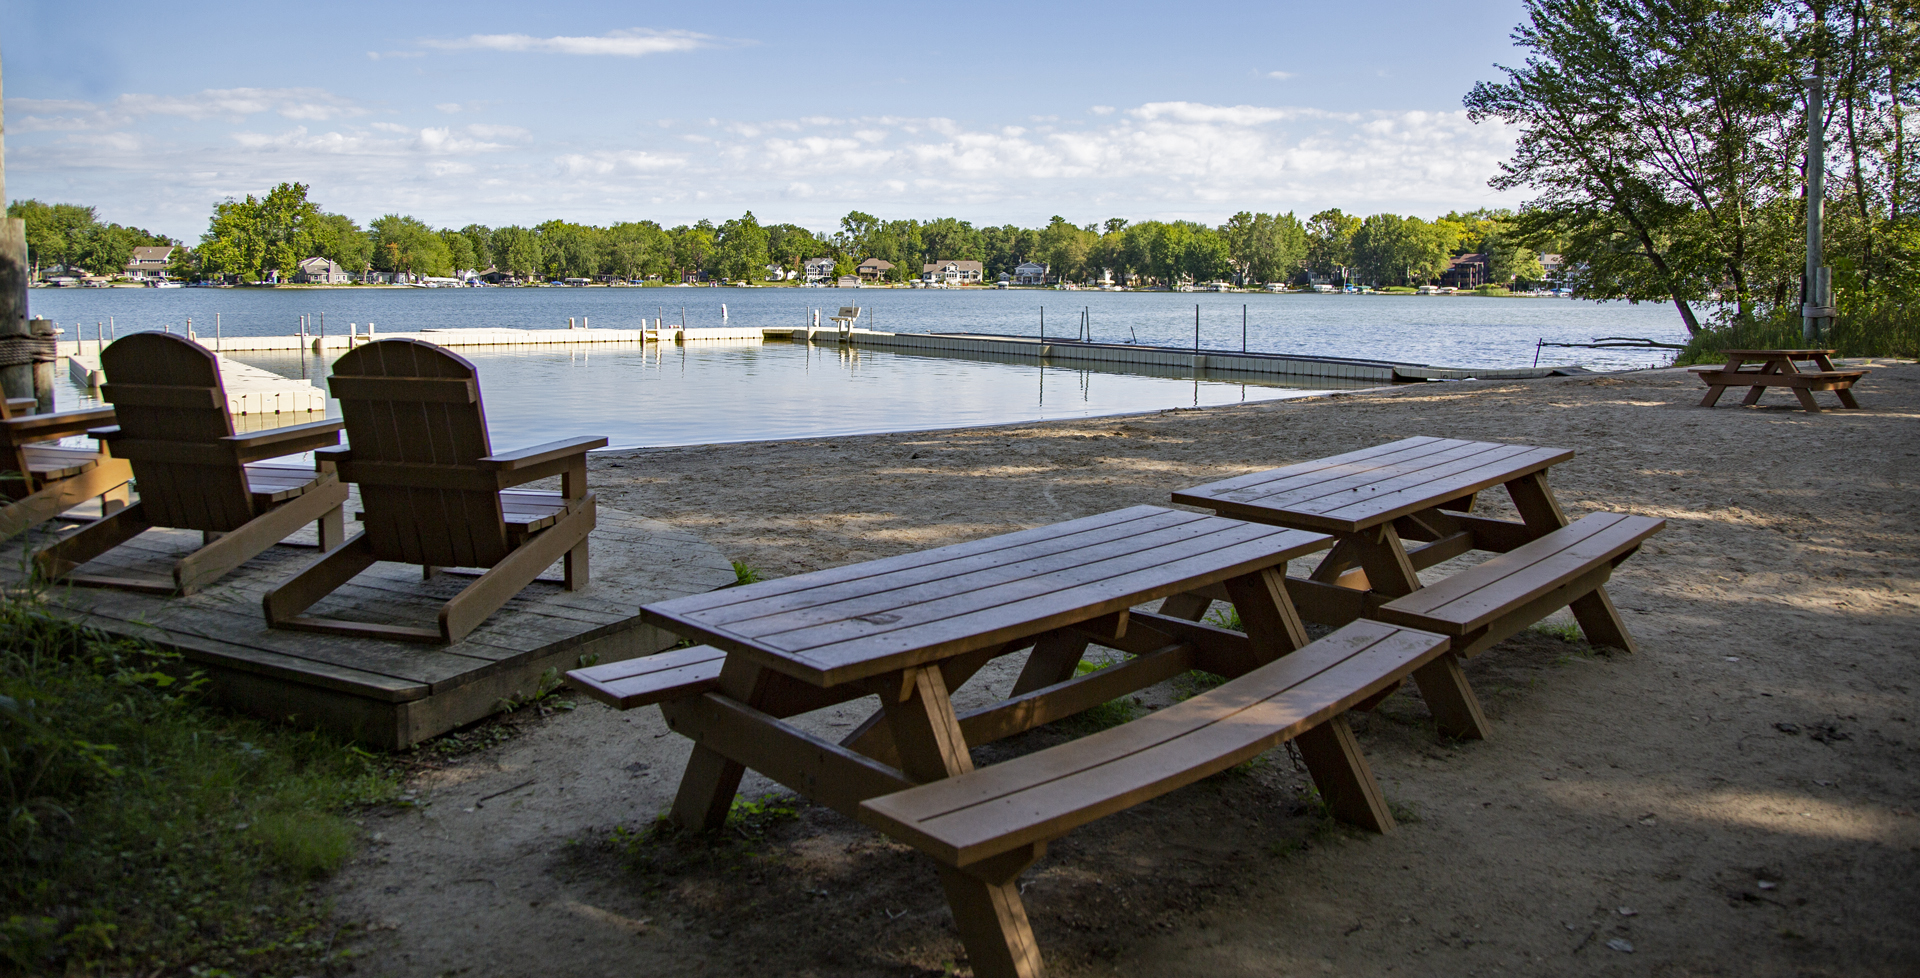 Picnic benches at a lake